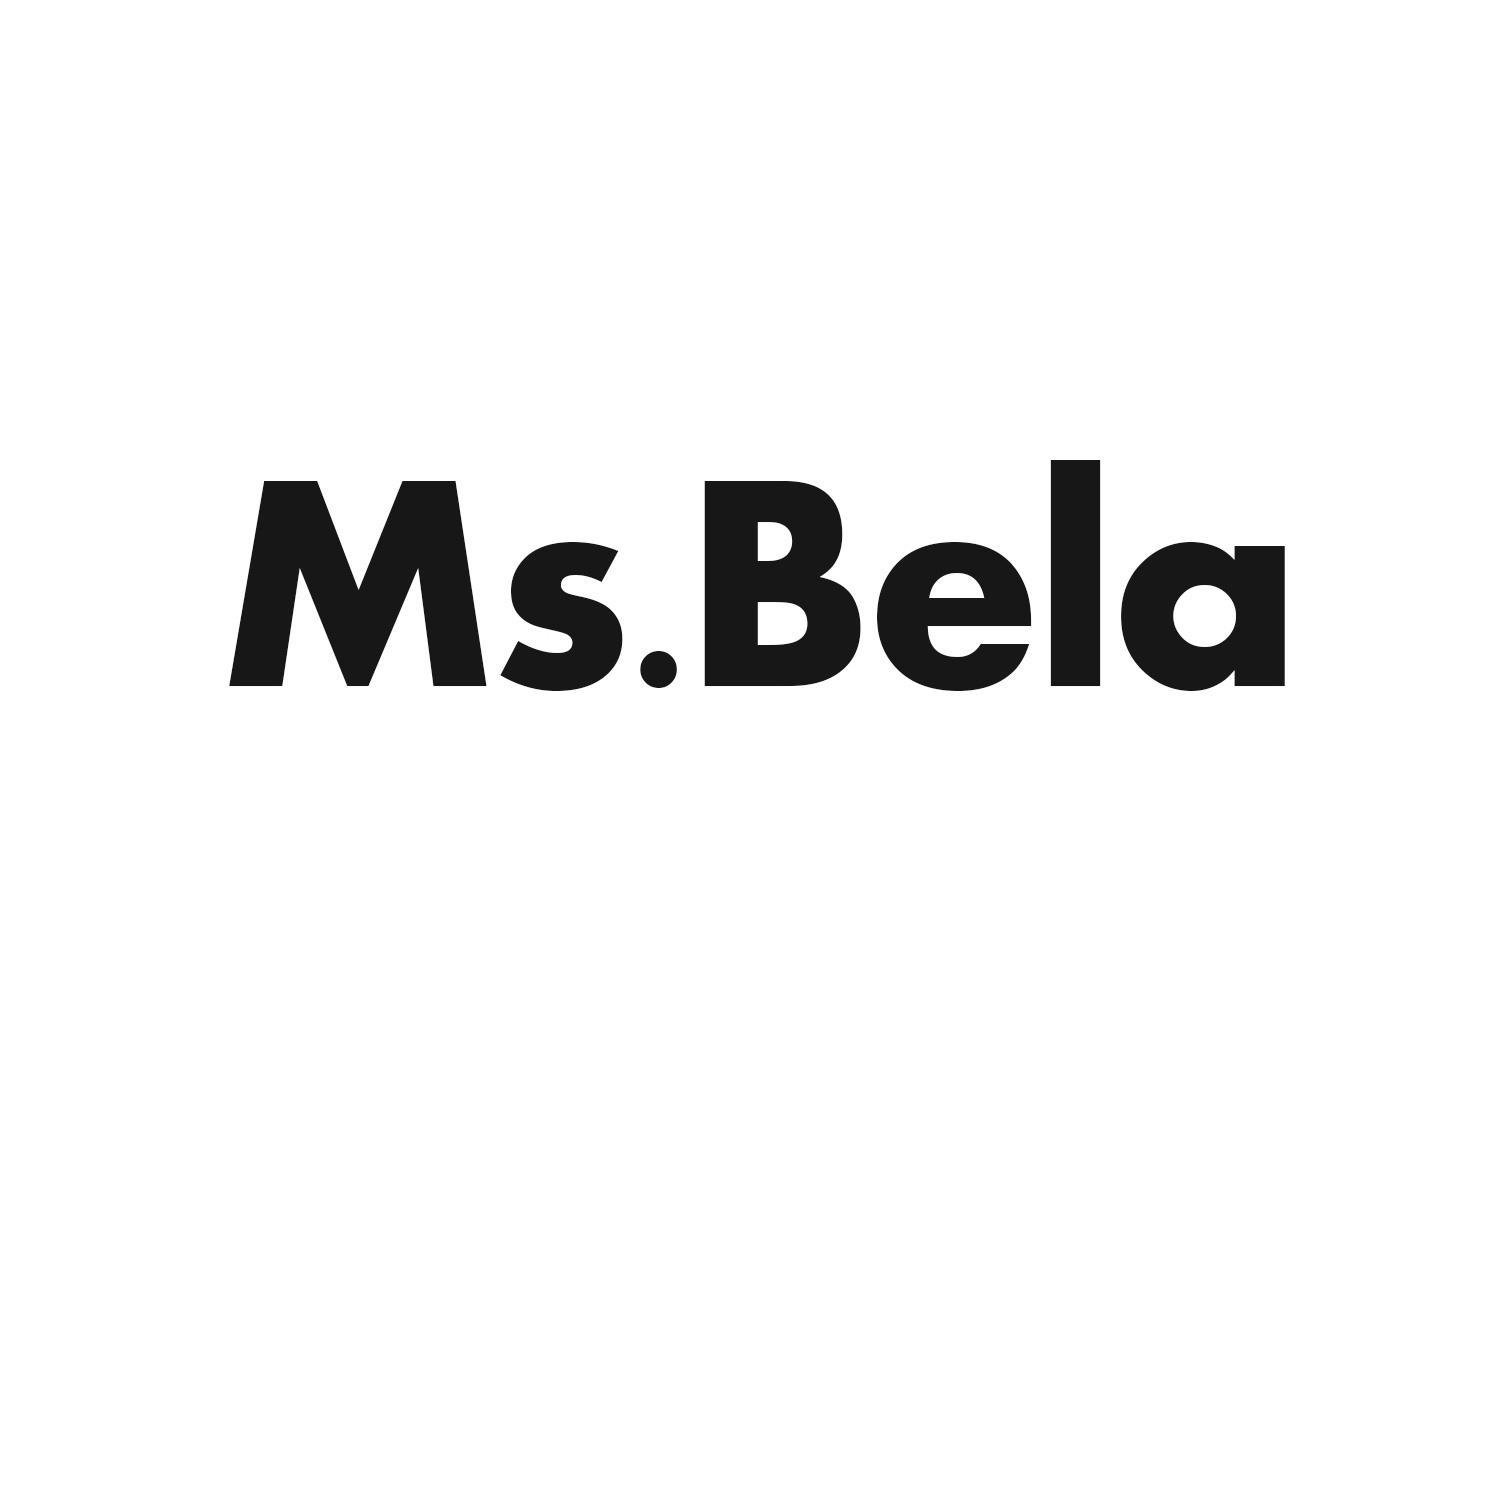 MS.BELA